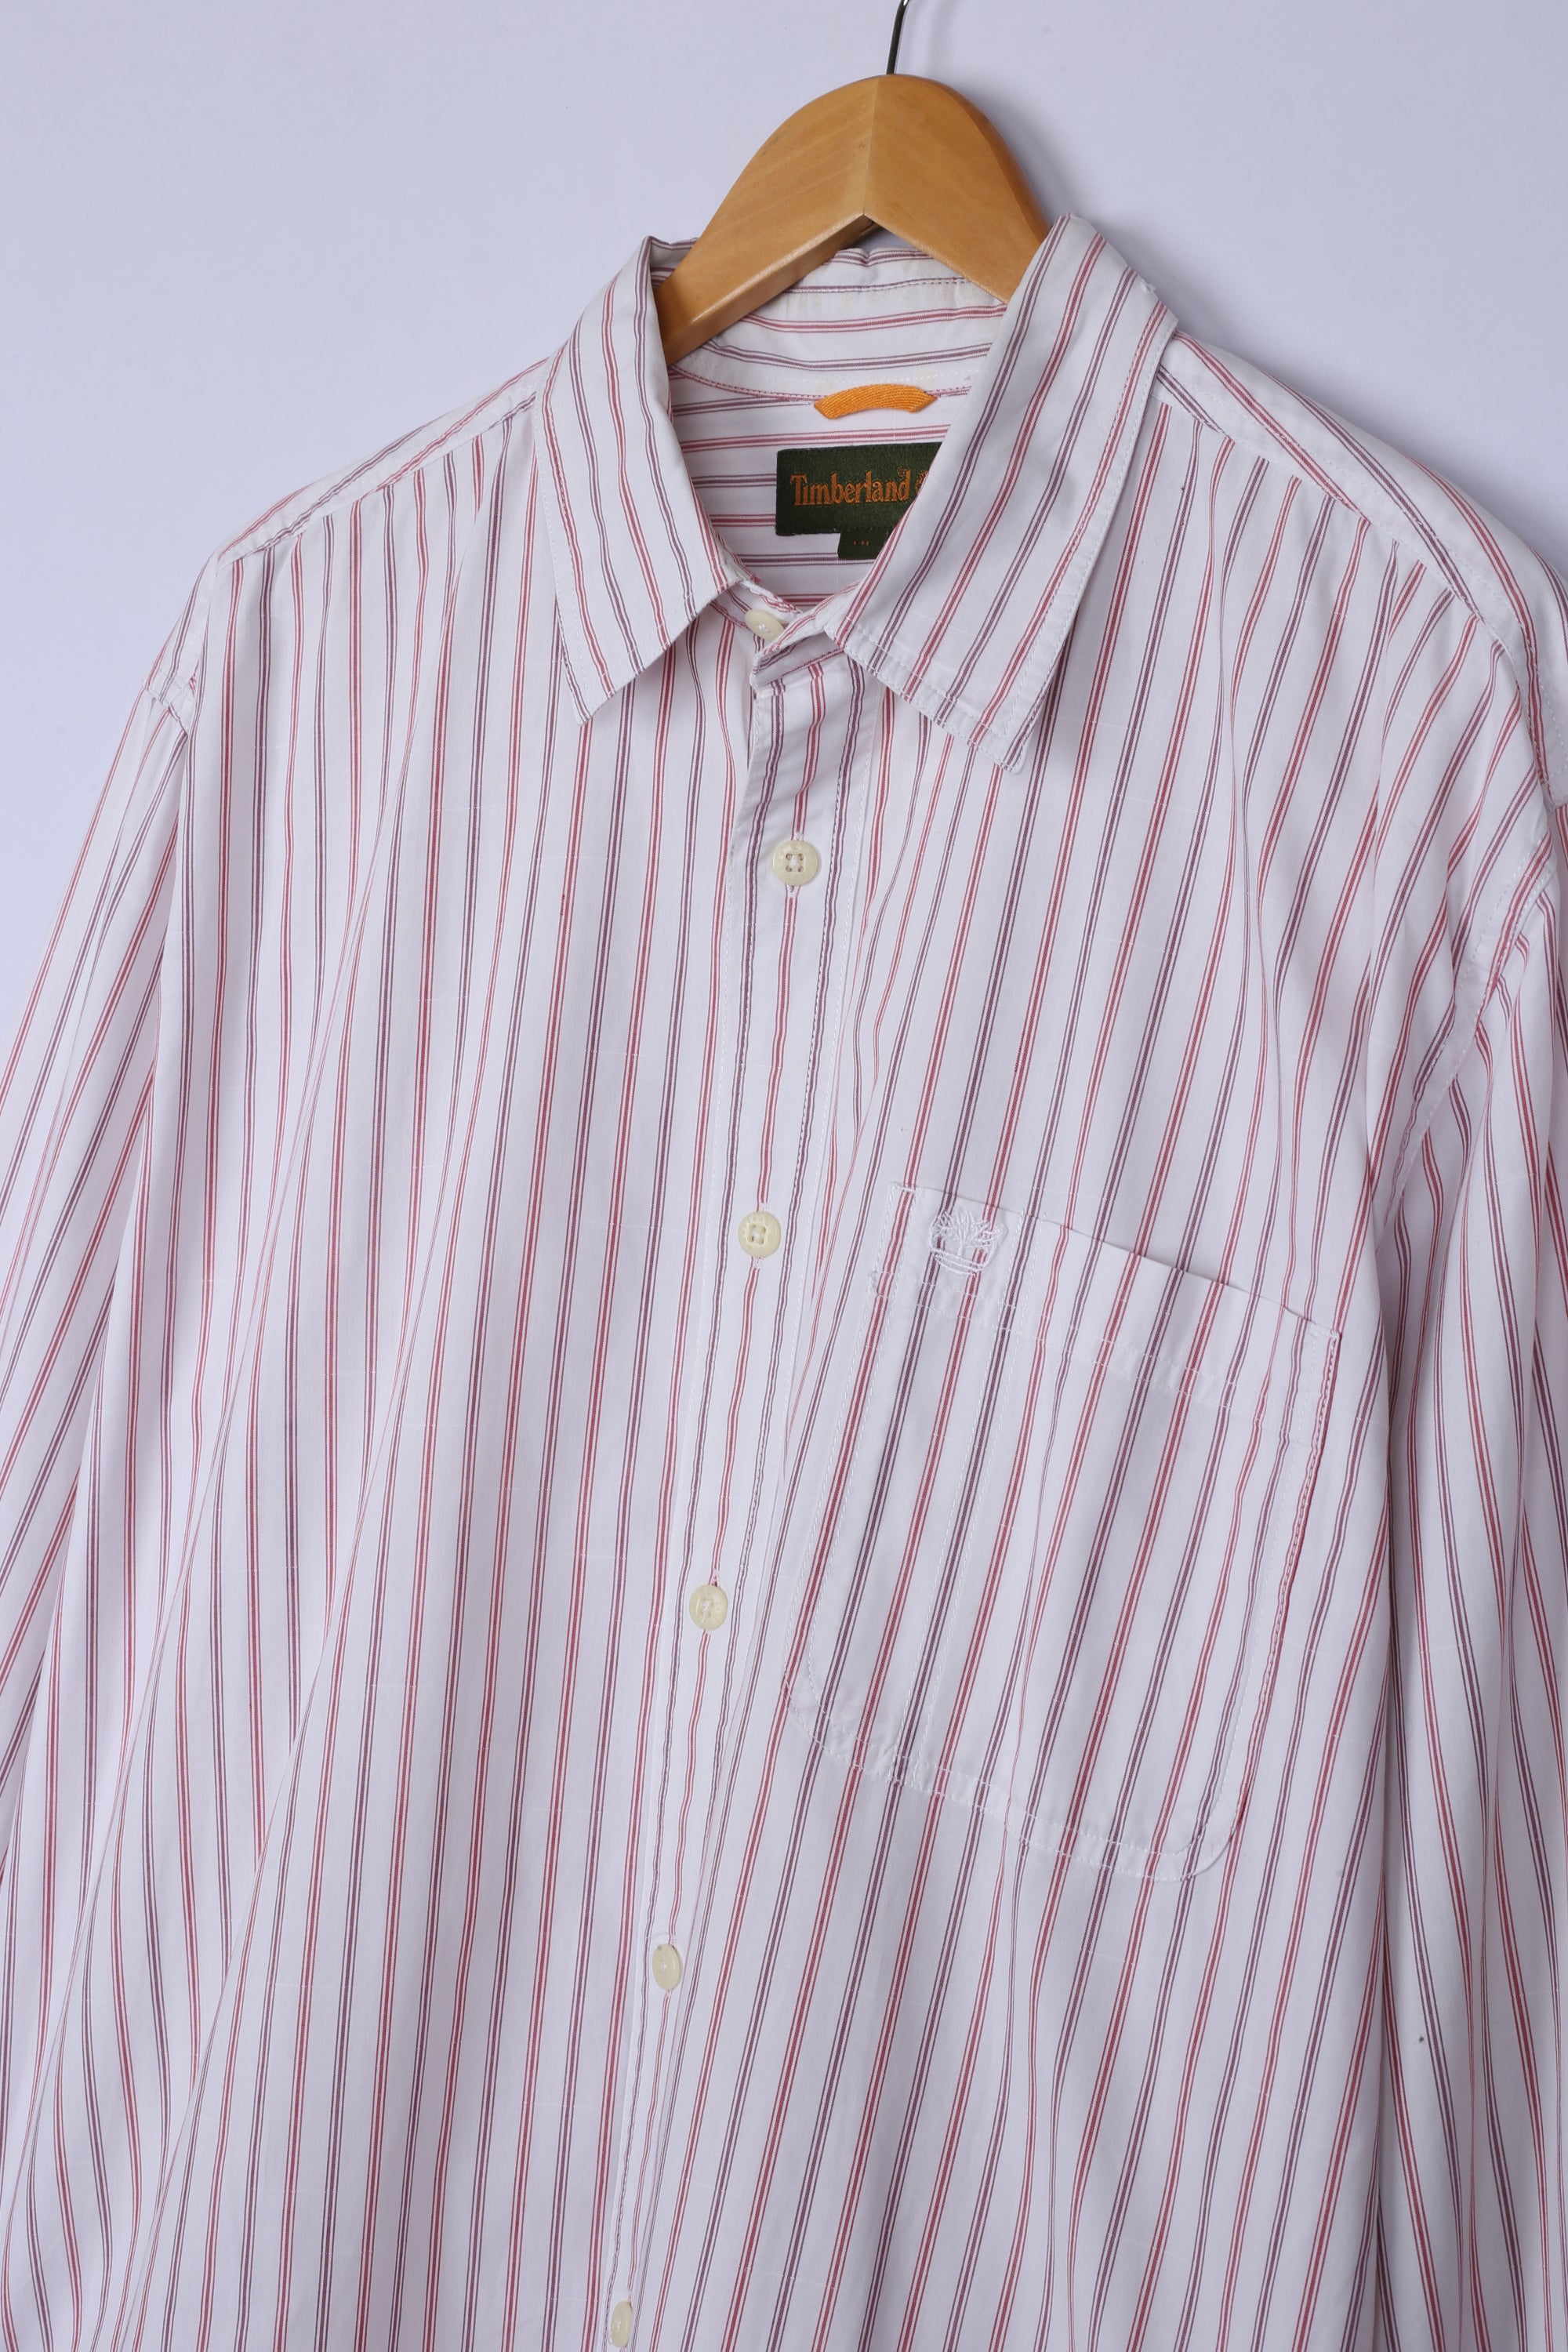 Vintage Timberland Shirt Pink Stripe